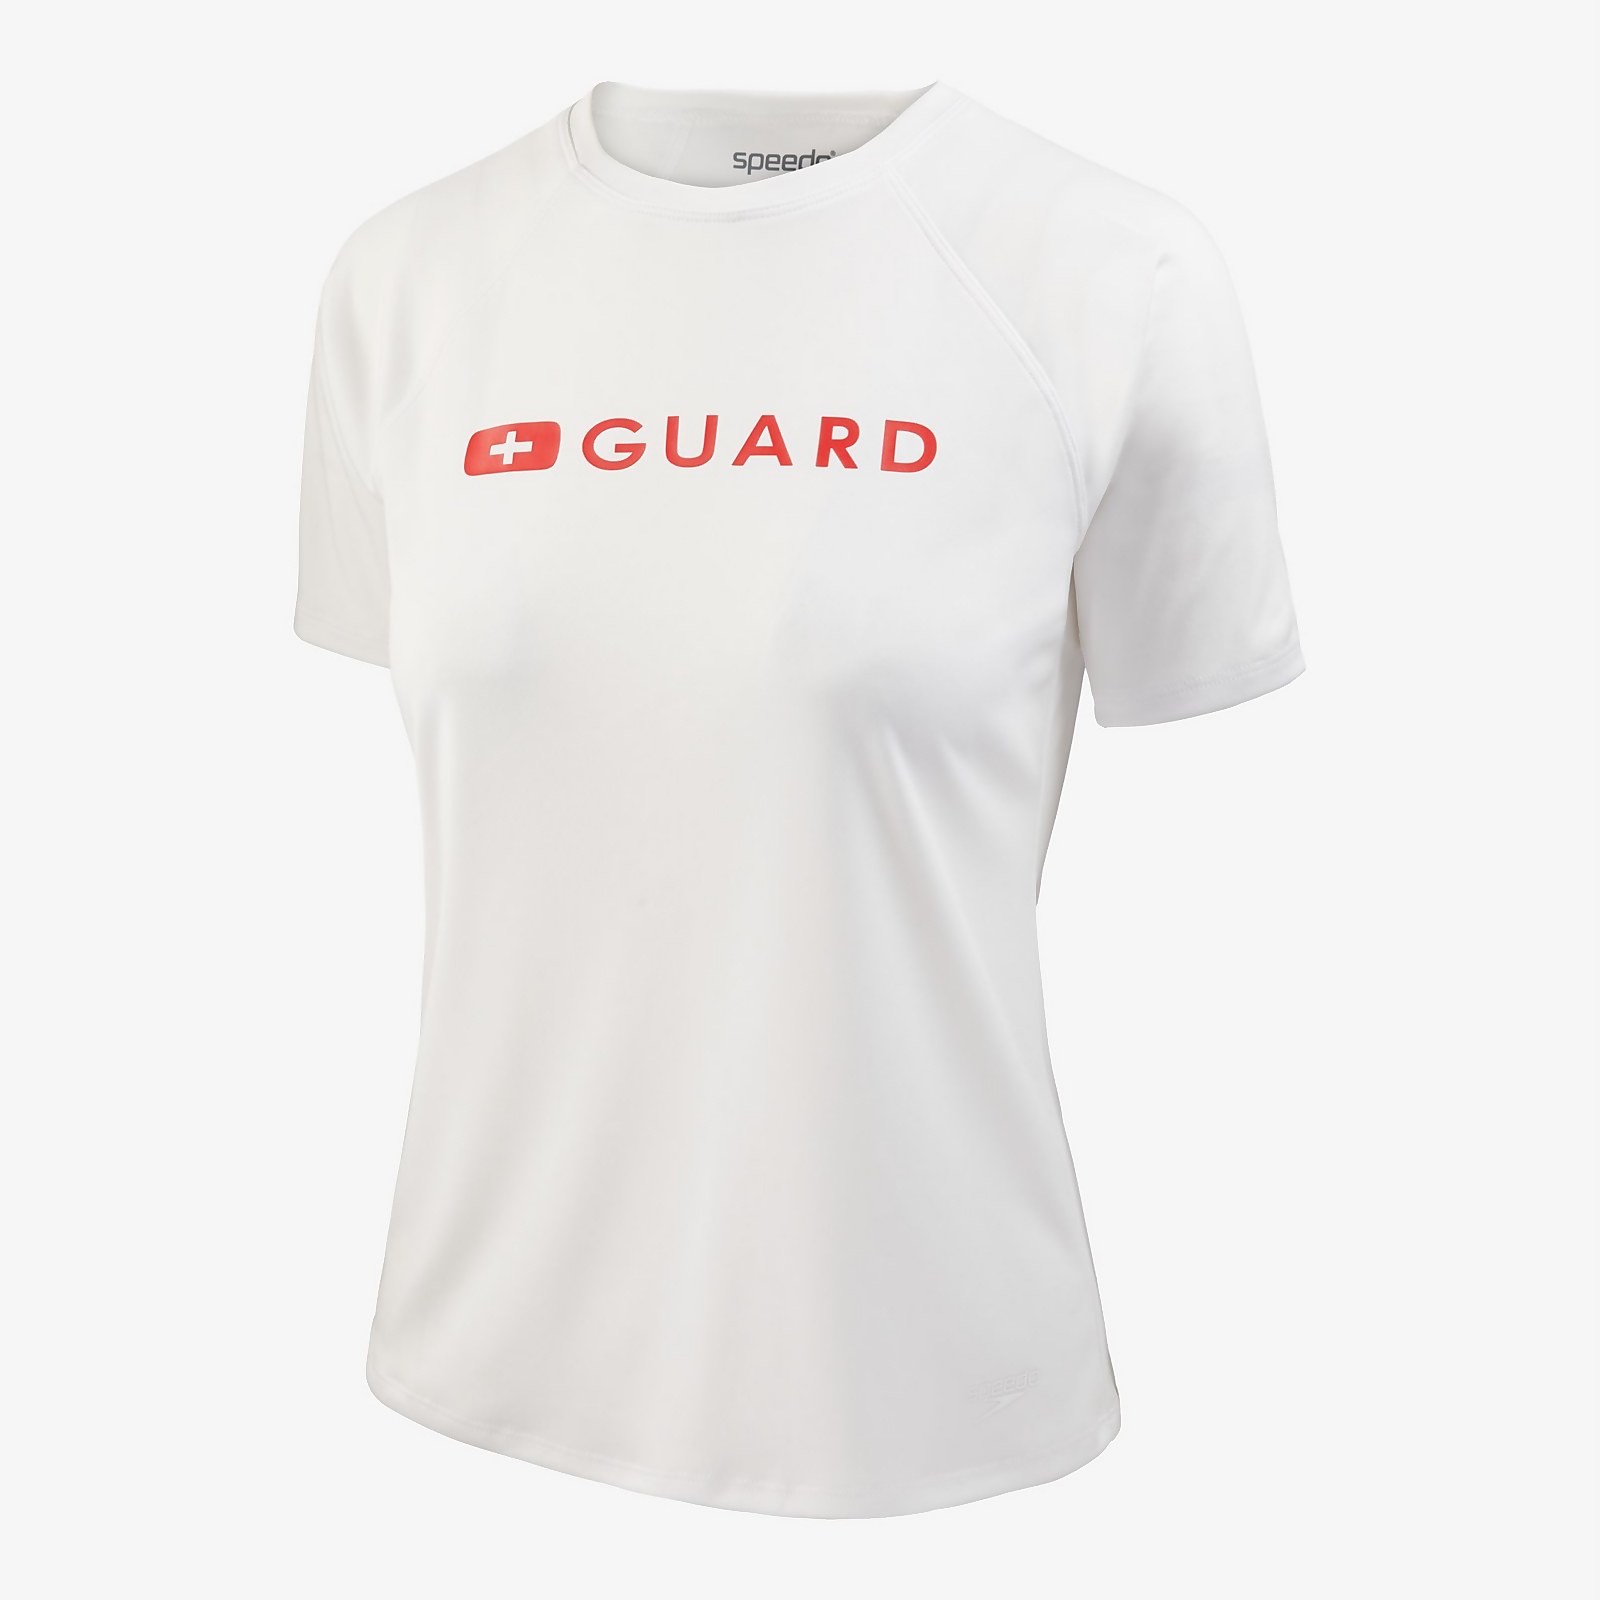 Speedo  Guard Short Sleeve Solid Swim Tee - M    : White